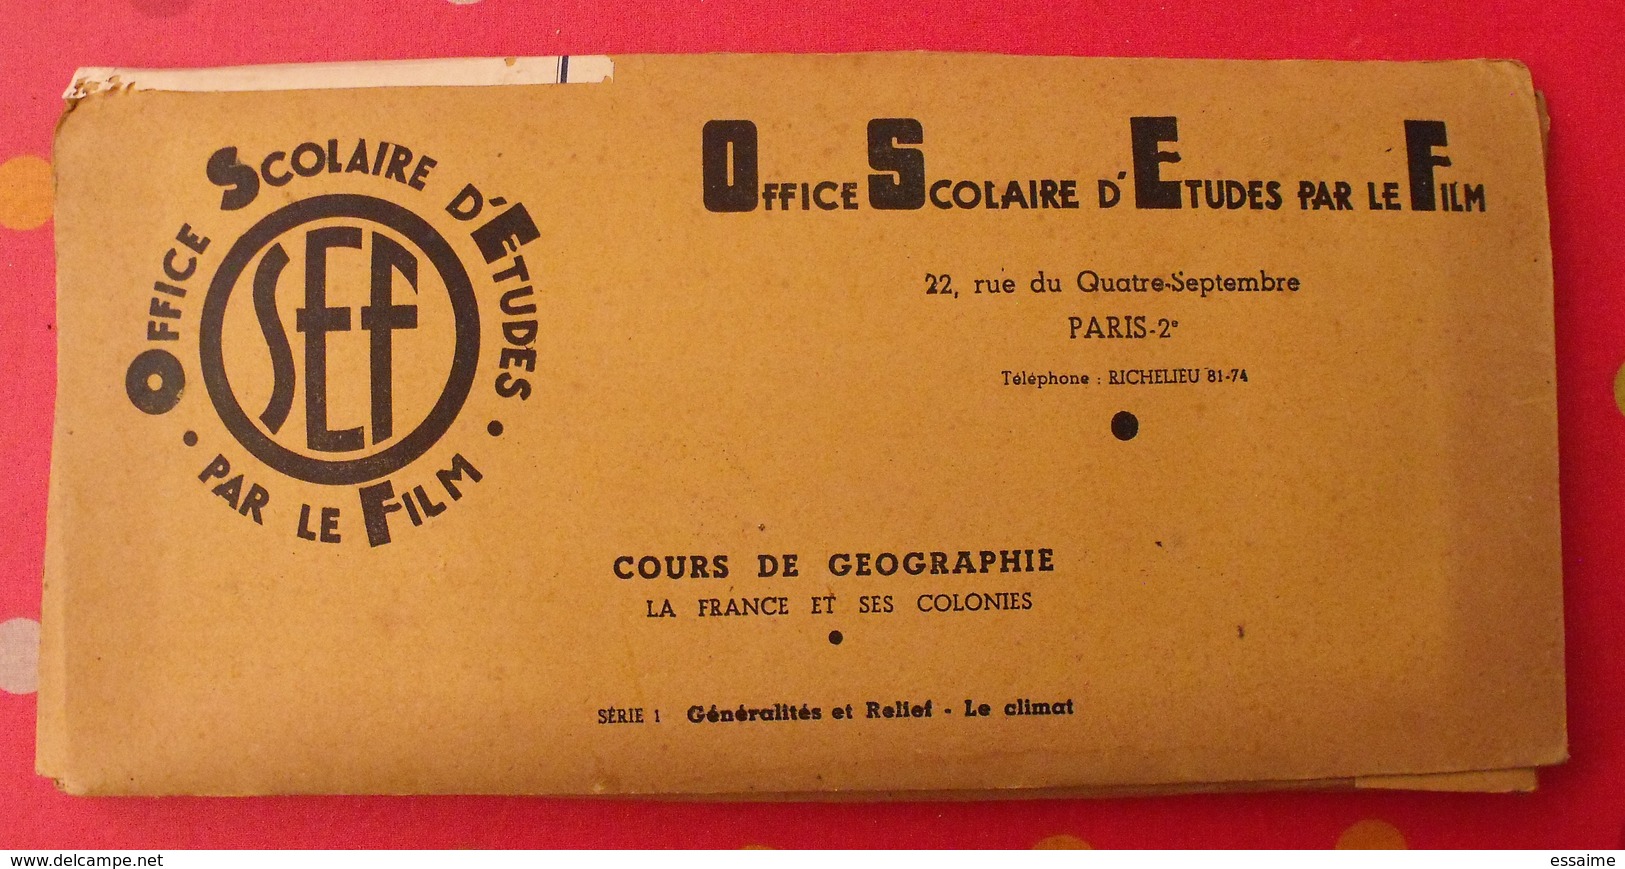 Photo Film Pédagogique. OSEF Office Scolaire D'études Par Le Film. Géographie France Et Colonies Relief Climat - 35mm -16mm - 9,5+8+S8mm Film Rolls